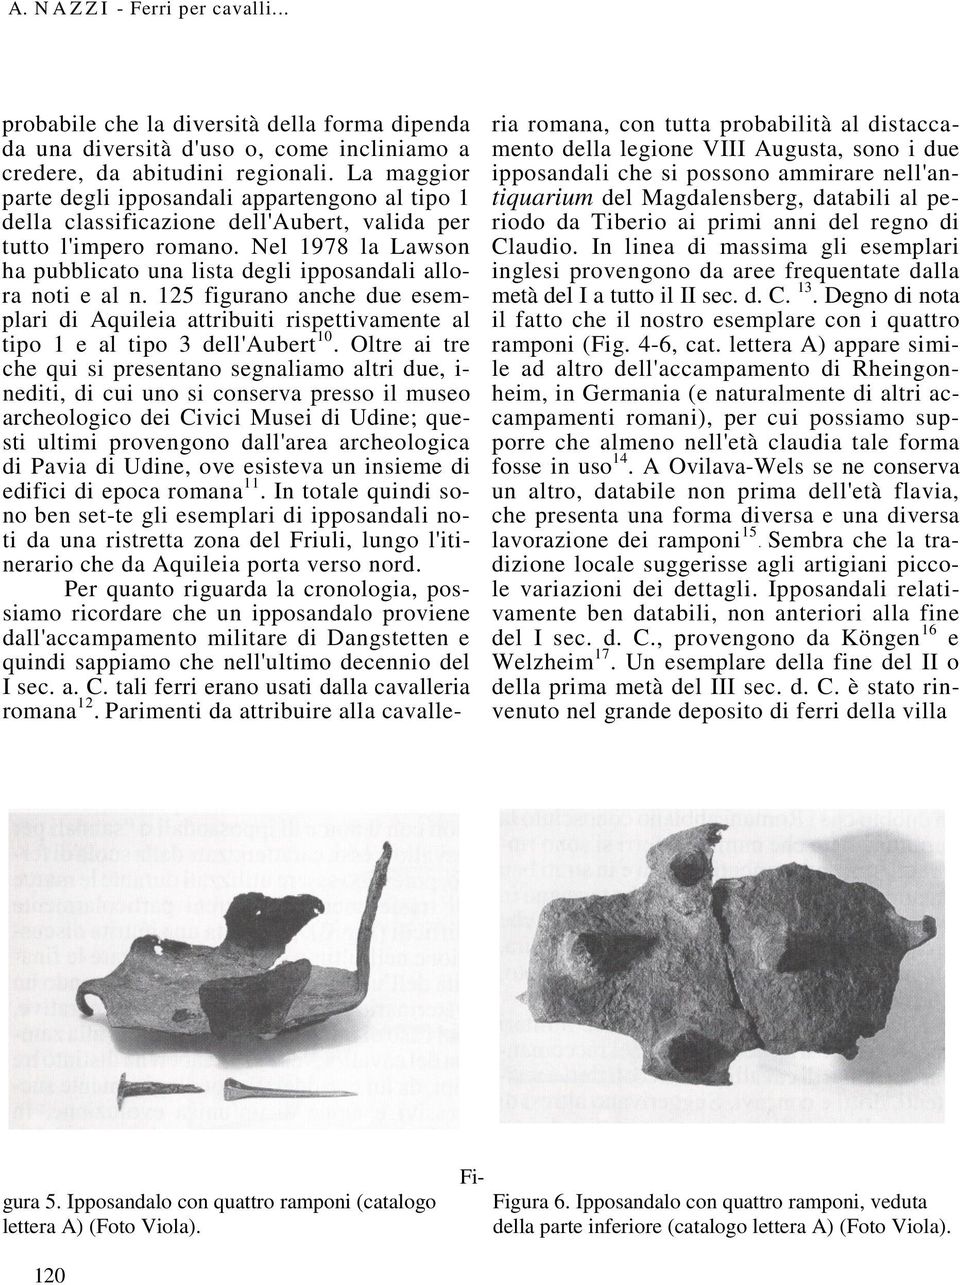 Nel 1978 la Lawson ha pubblicato una lista degli ipposandali allora noti e al n. 125 figurano anche due esemplari di Aquileia attribuiti rispettivamente al tipo 1 e al tipo 3 dell'aubert 10.